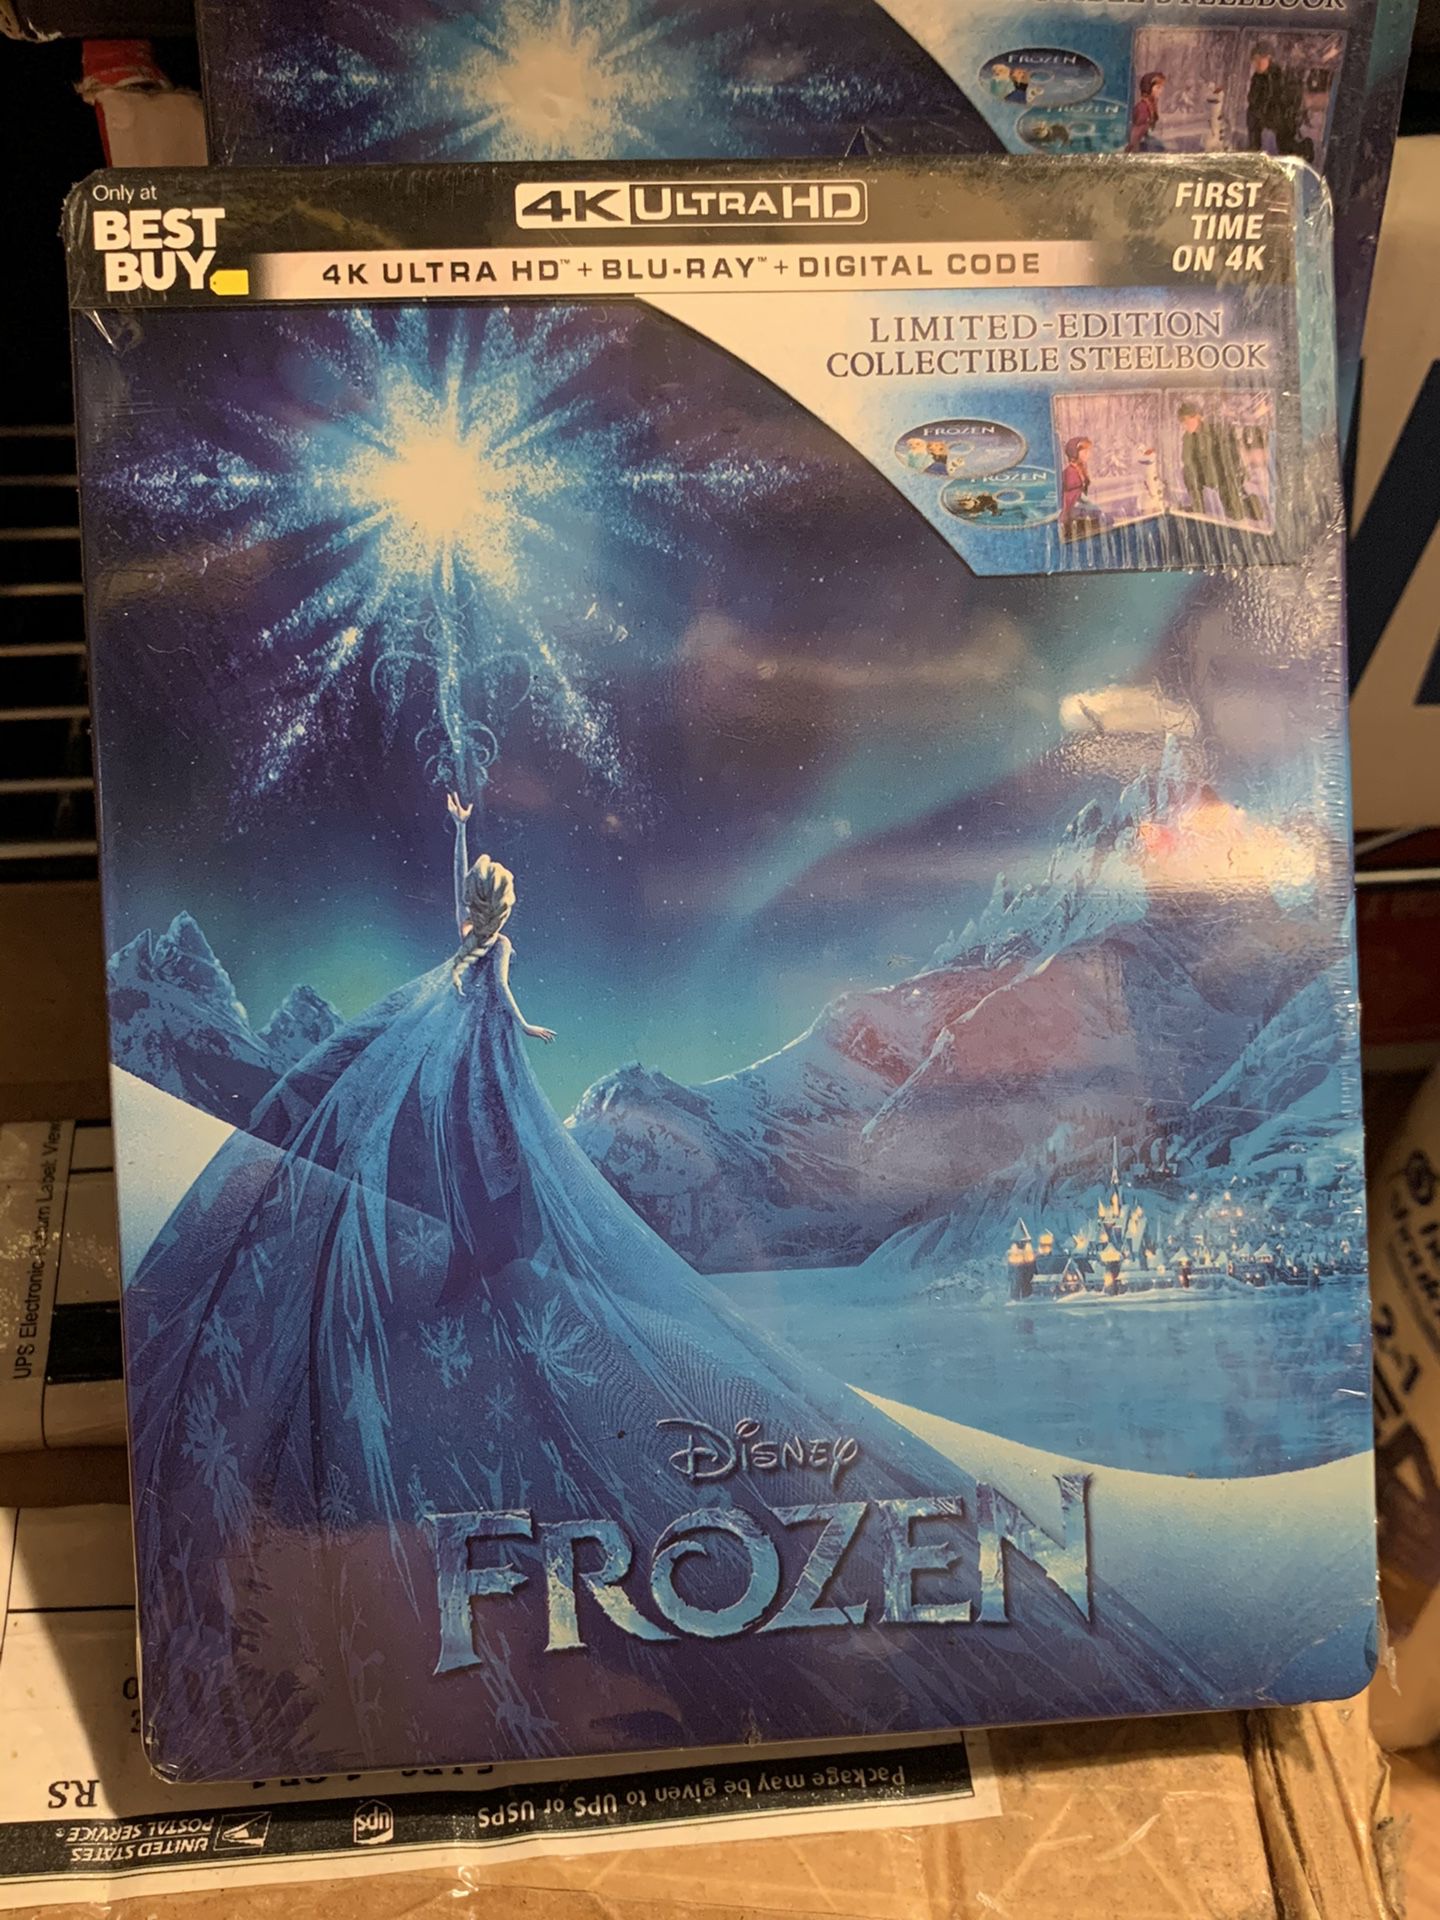 Disney Frozen Best Buy exclusive Steelbook Limited edition dvd 4K